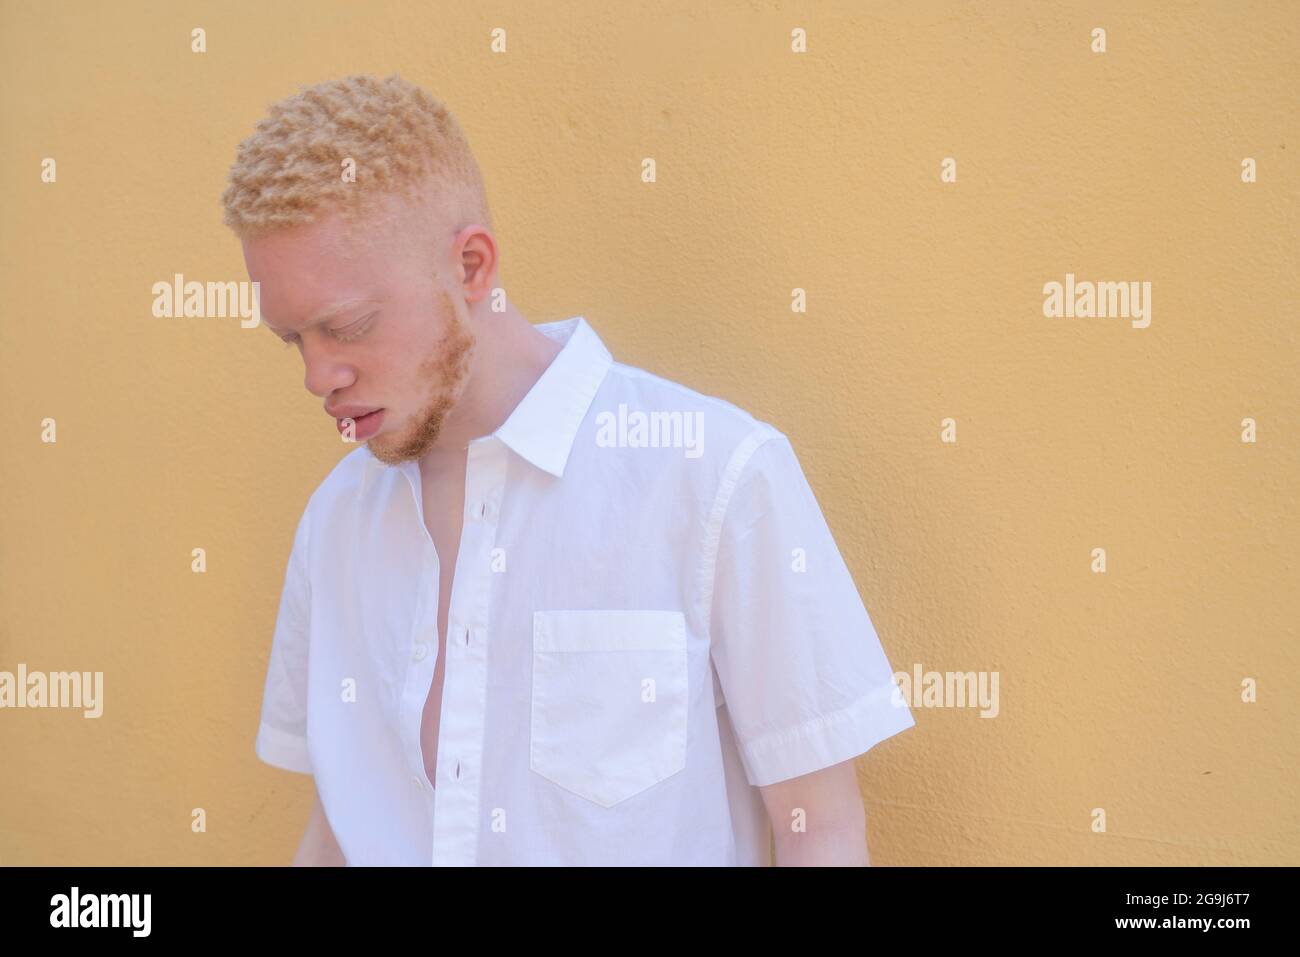 Deutschland, Köln, Albino Mann in weißem Hemd an gelber Wand Stockfoto